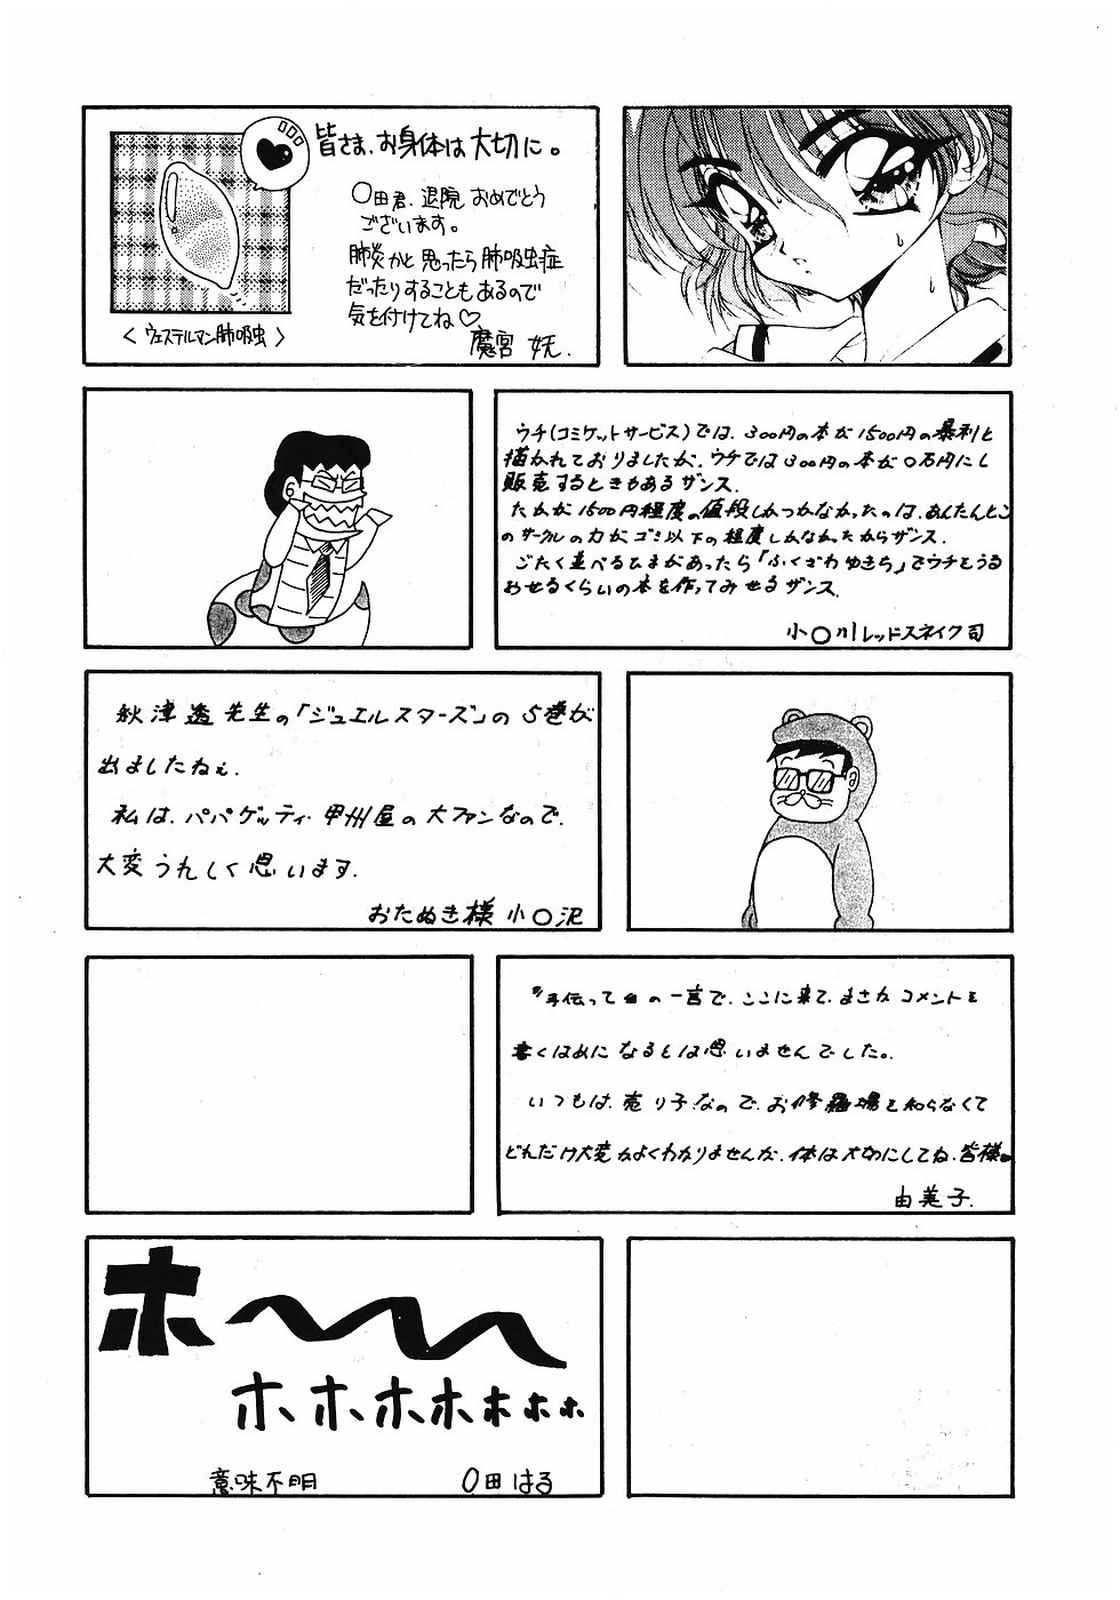 [美色アカデミィー＆関東司組 (Various)] Bi-shoku Academy Vol.1 (Various) page 39 full